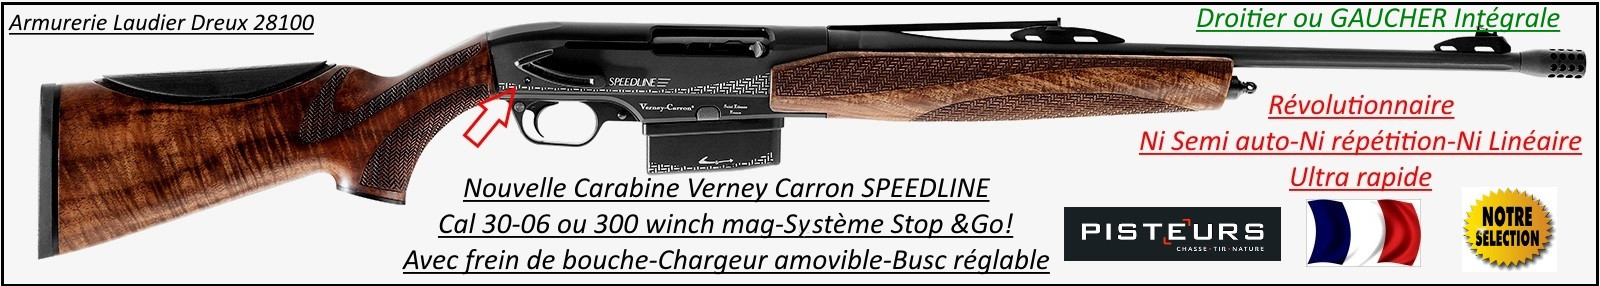 Carabine Verney Carron  Speedline DROITIER ou GAUCHER  INTEGRALE-répétition-La plus rapide-Chargeurs-3 coups ou 5 coups -amovibles-Calibre 30-06 ou 300 winch mag-PROMOTIONS